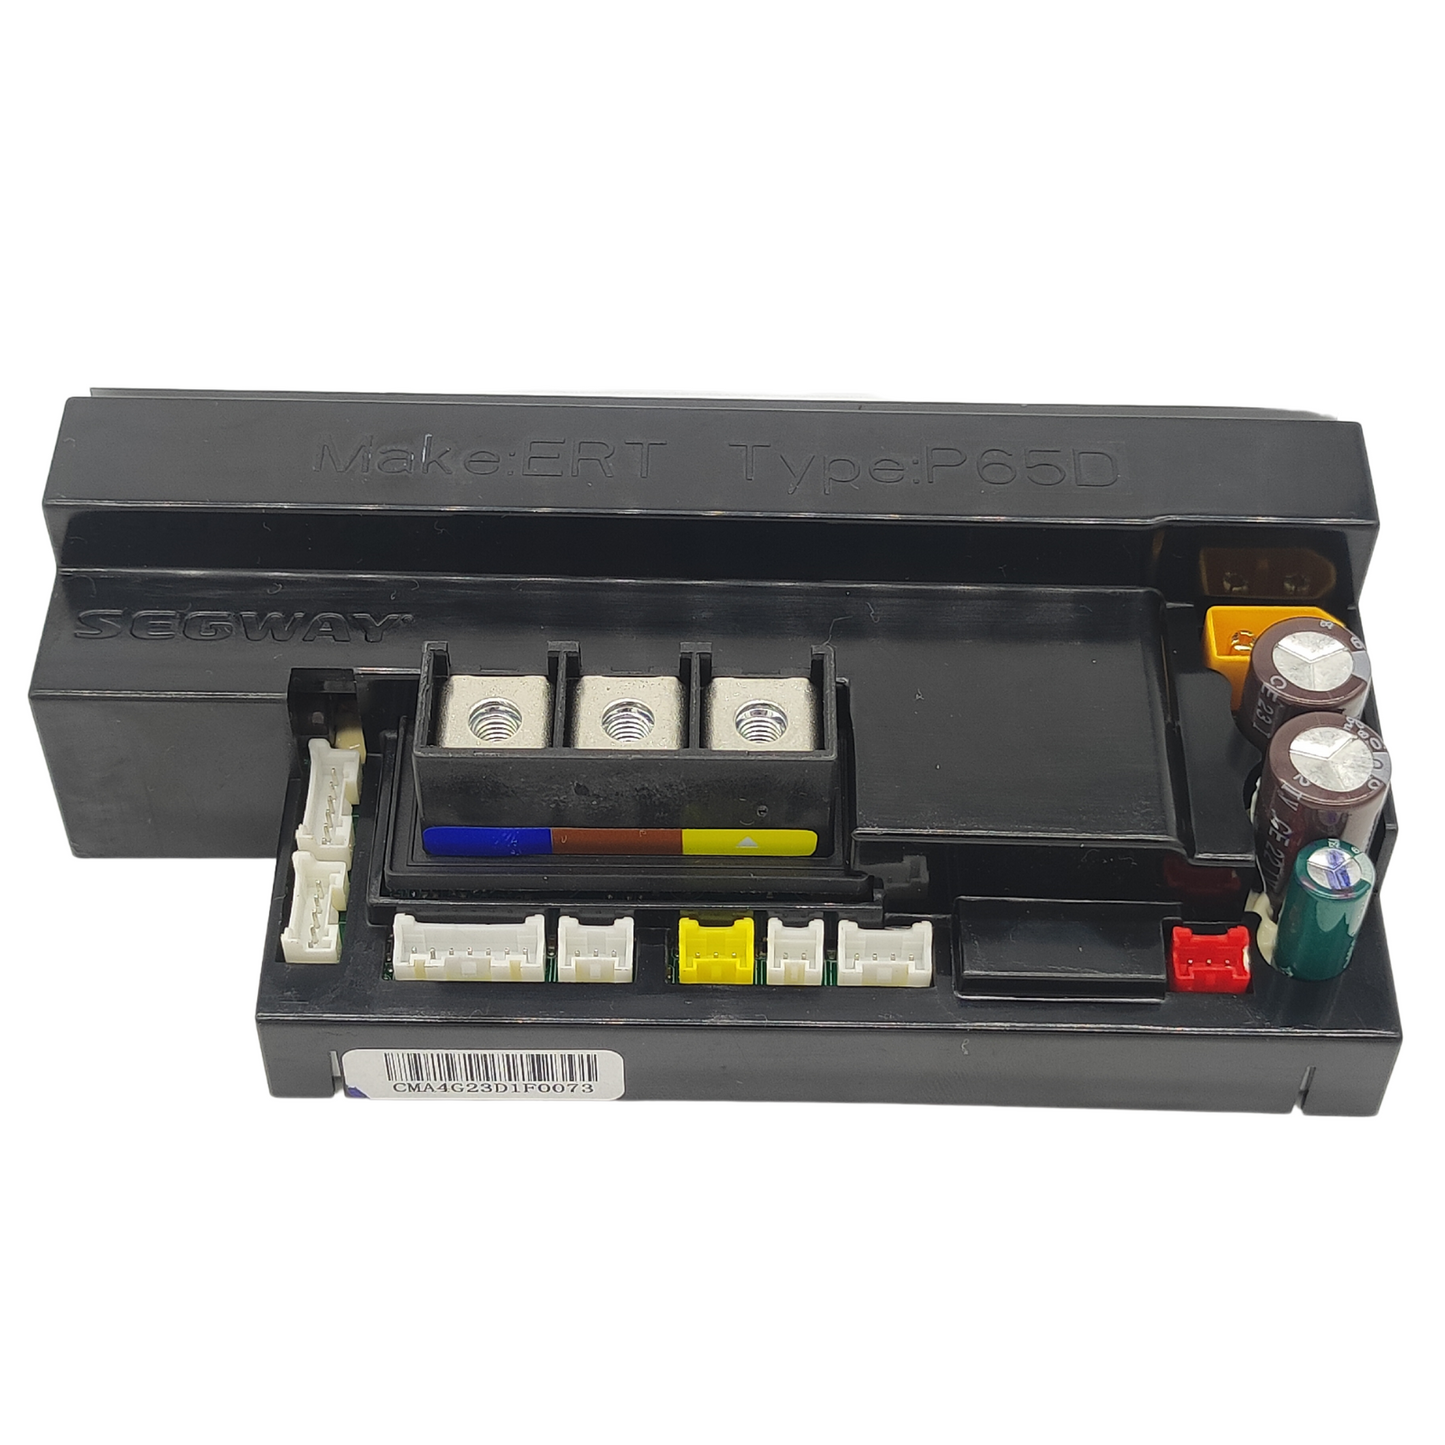 Ninebot Segway P100 controller control unit original